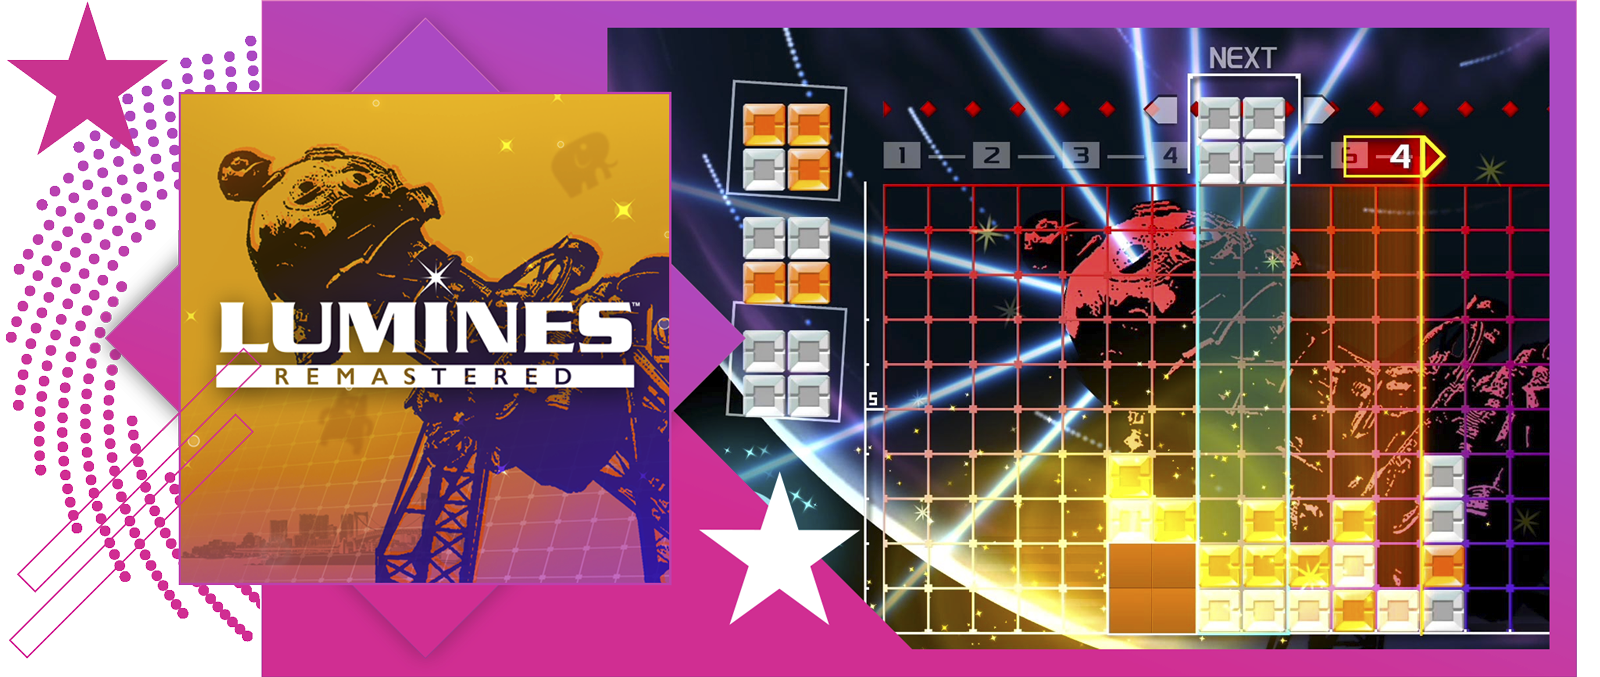 Slika funkcije za najbolje ritmičke igre, sa konceptualnim umetničkim prikazom i tokom igre iz Lumines Remastered.